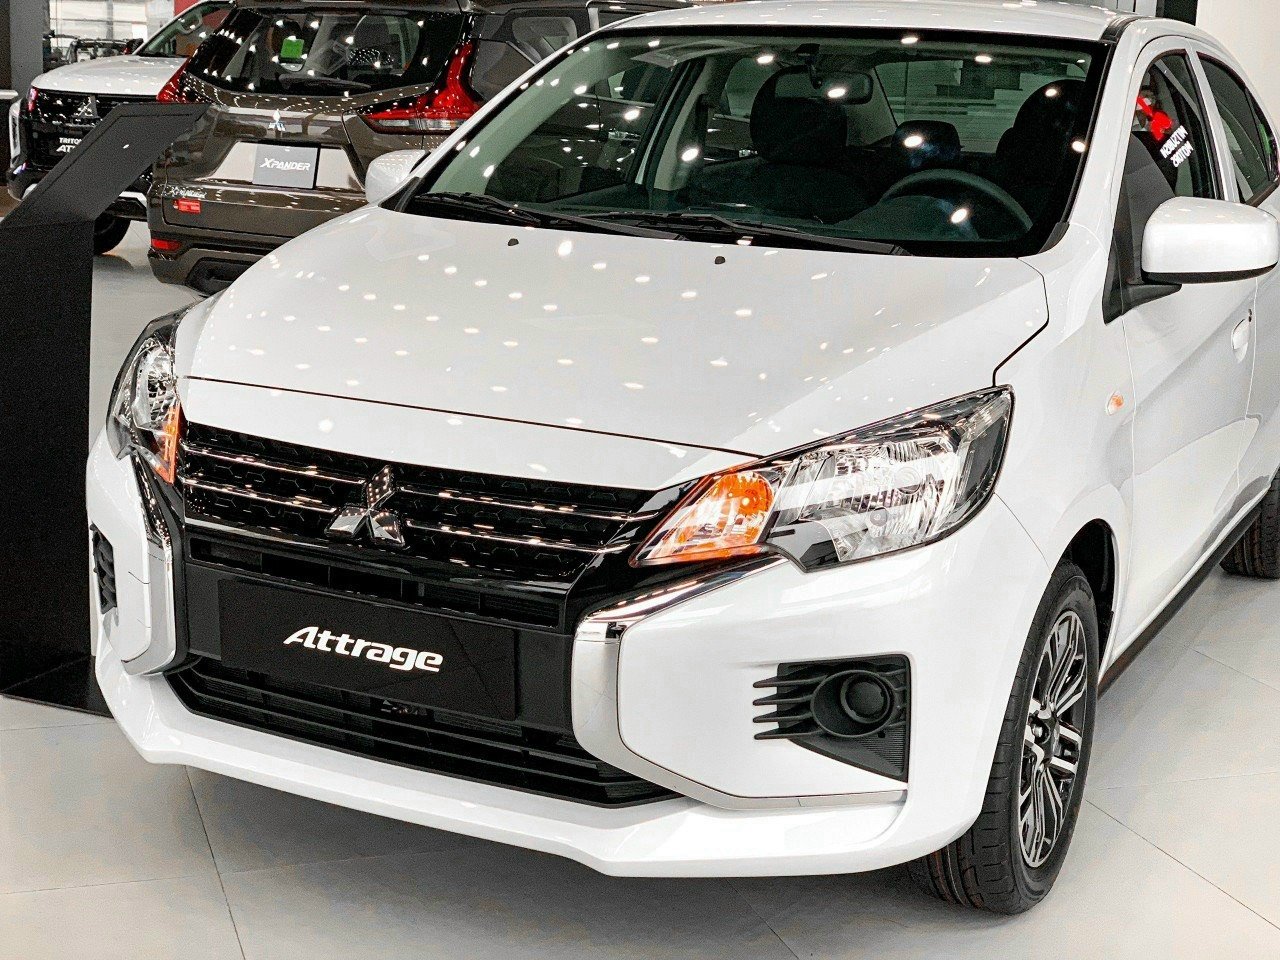 Video Giới thiệu chi tiết mẫu xe Mitsubishi Attrage 2020  Mitsubishi  Satsco